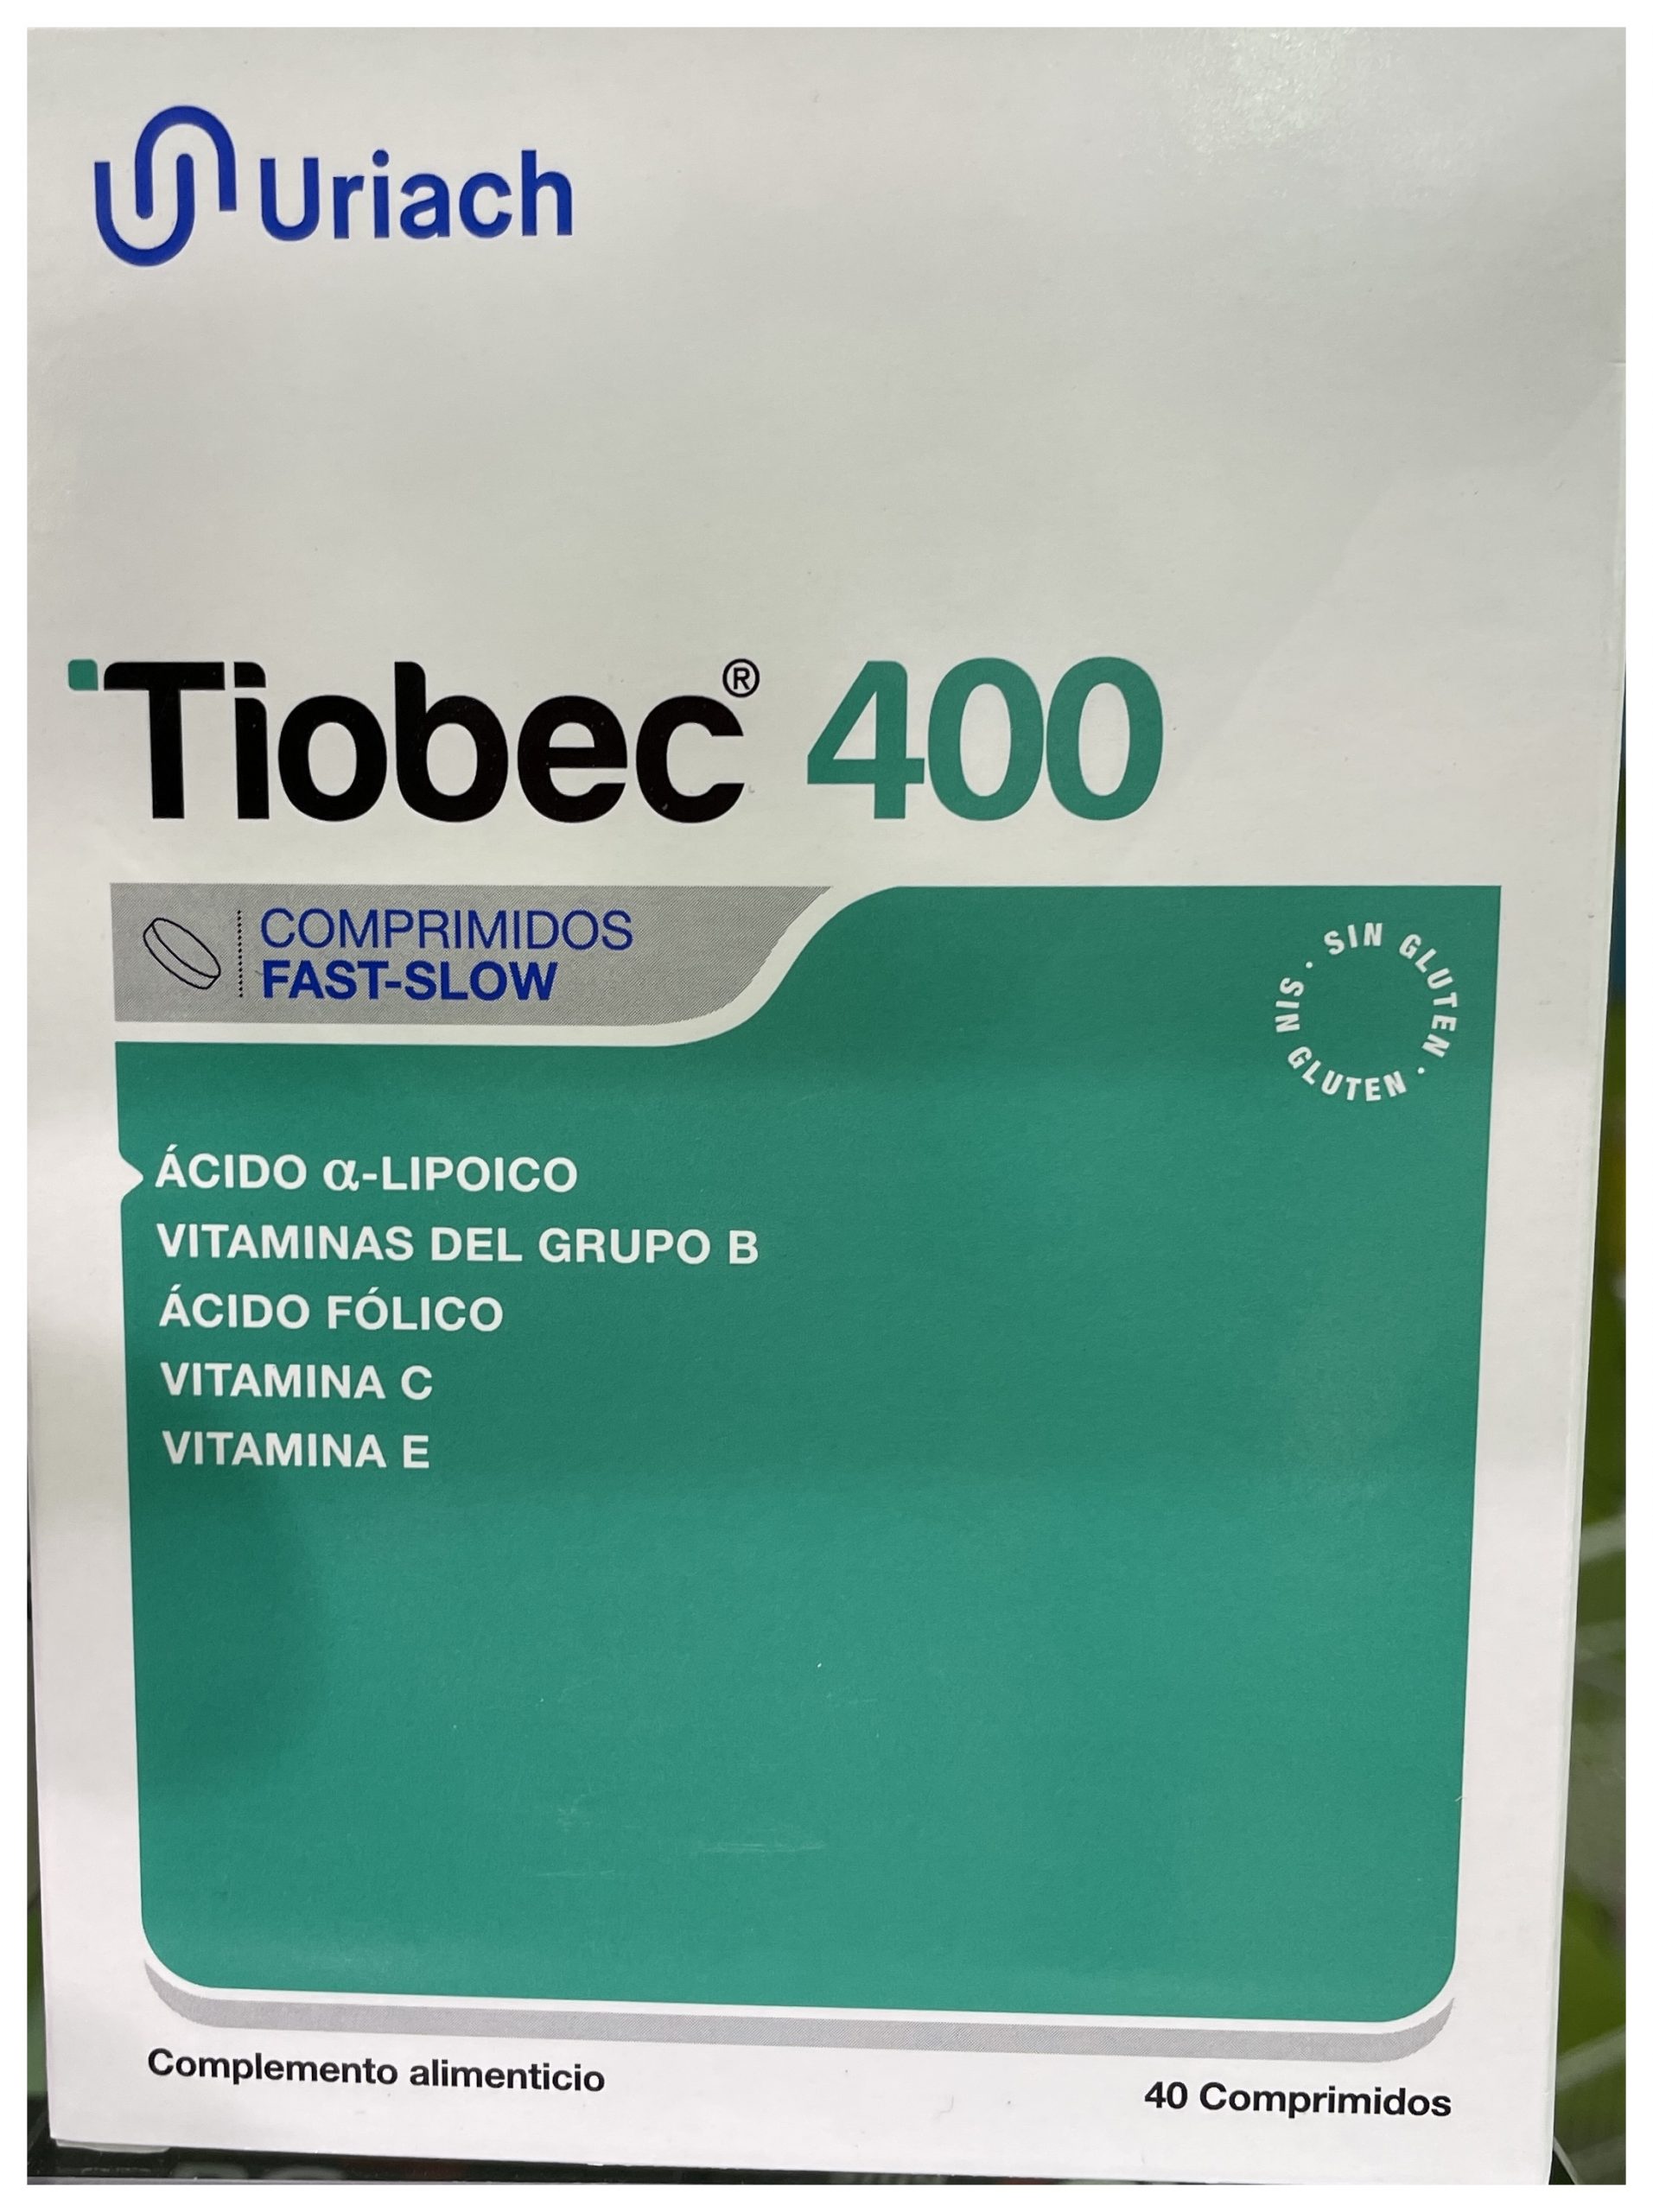 Tiobec 400 es un complemento alimenticio a base de Ácido α- lipoico, vitaminas del grupo B, vitamina E y vitamina C que ofrece protección del sistema nervioso frente al estrés oxidativo